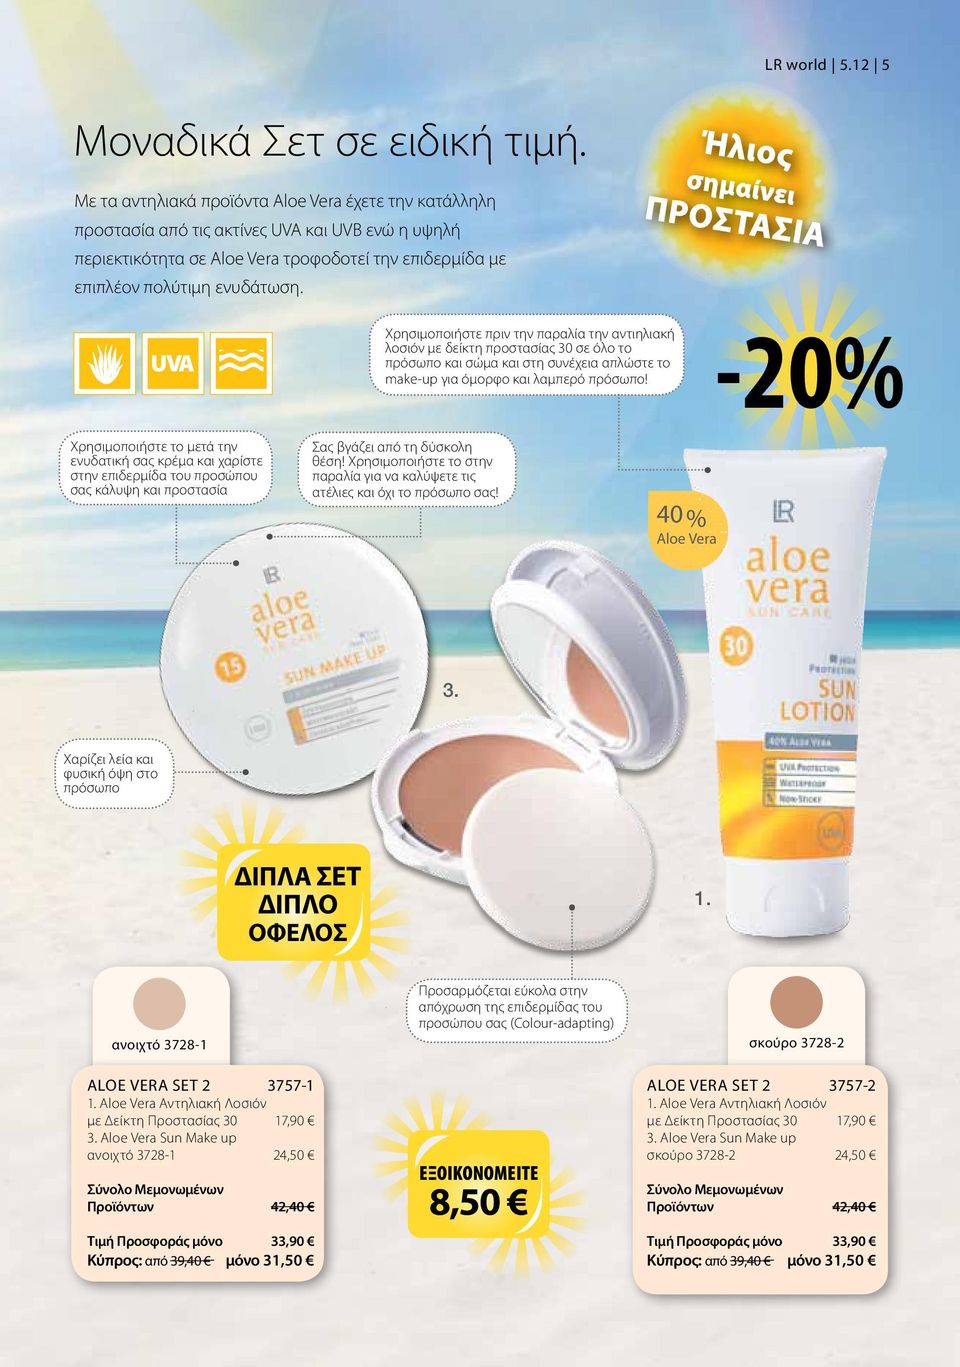 Ήλιος σημαίνει ΠΡΟΣΤΑΣΙΑ Χρησιμοποιήστε πριν την παραλία την αντιηλιακή λοσιόν με δείκτη προστασίας 30 σε όλο το πρόσωπο και σώμα και στη συνέχεια απλώστε το make-up για όμορφο και λαμπερό πρόσωπο!